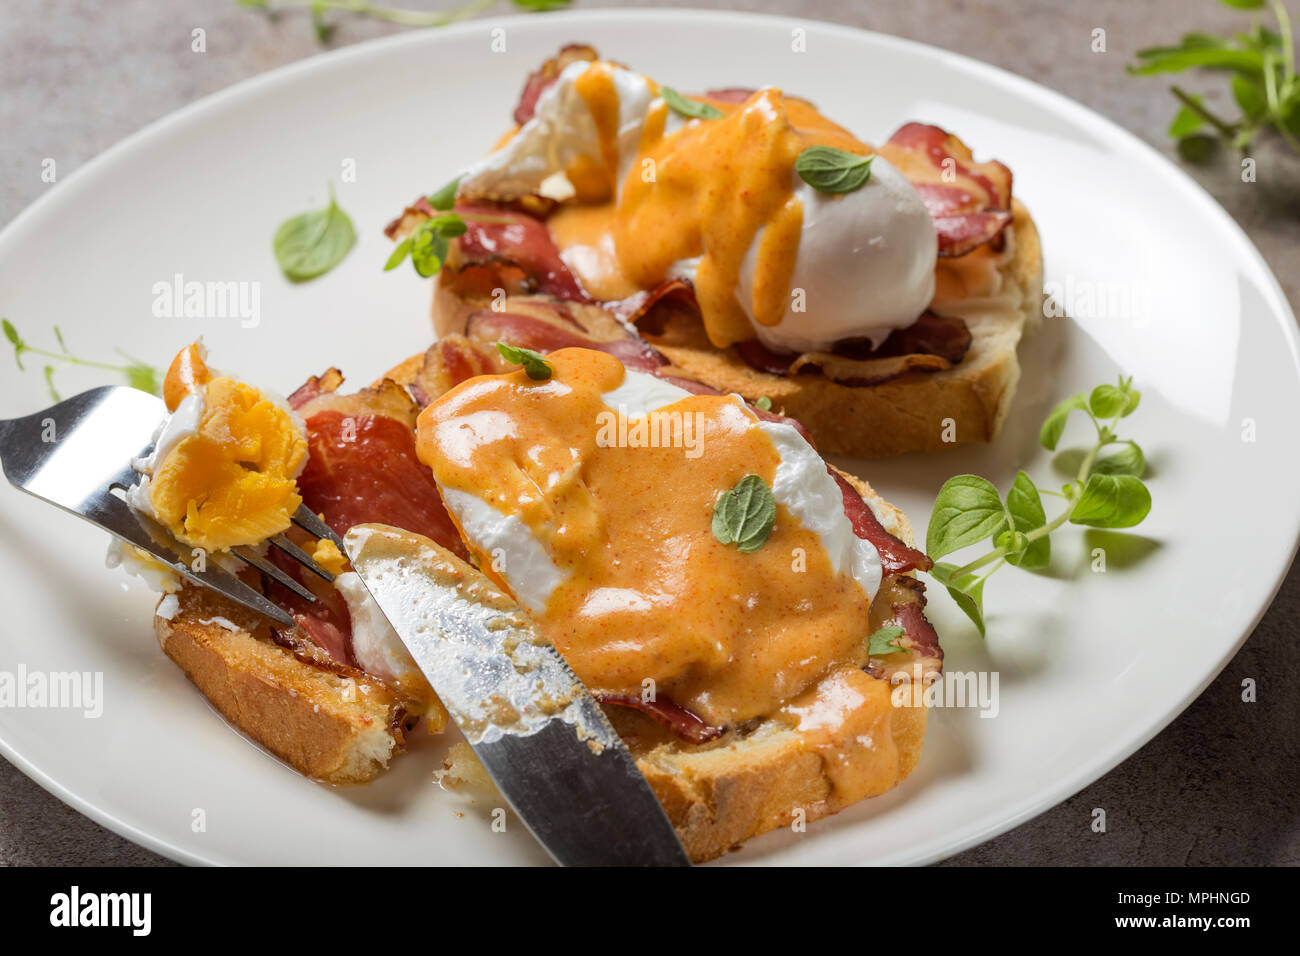 Les oeufs Bénédicte- toasts, jambon, œufs pochés et sauce hollandaise au beurre délicieux - vue rapprochée Banque D'Images